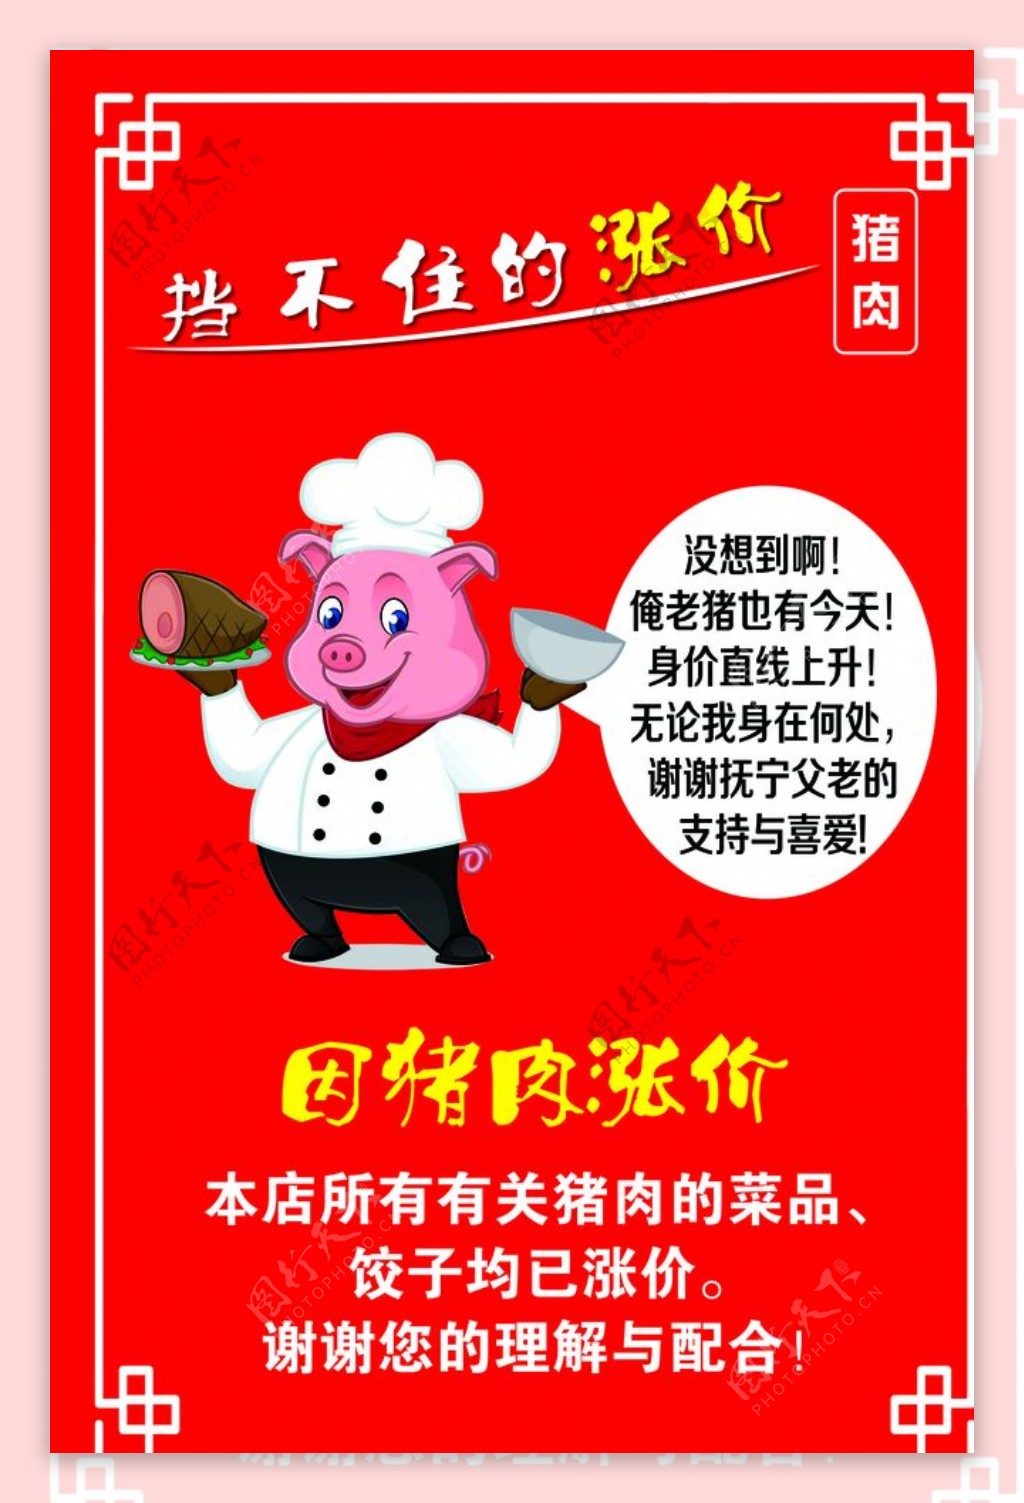 猪肉涨价海报